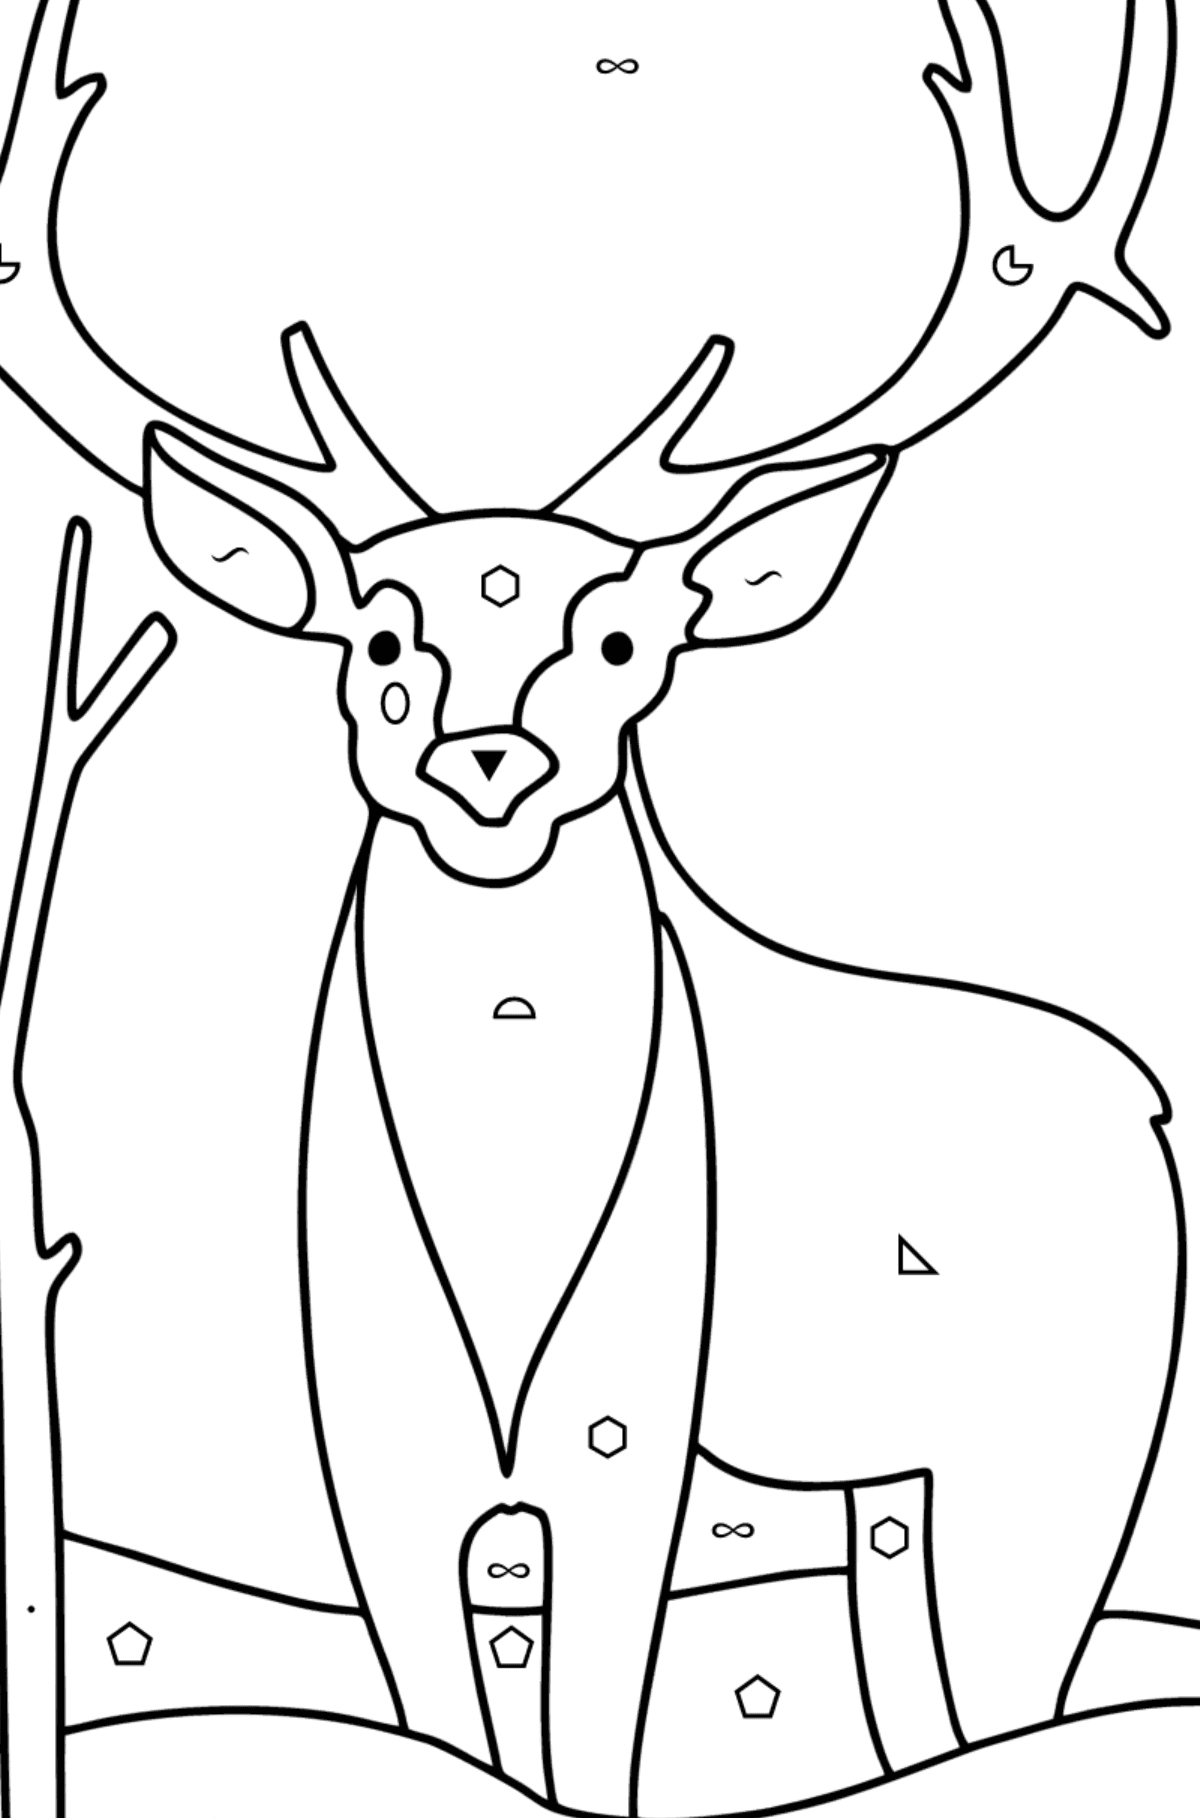 Kış ormandaki geyik boyama sayfası - Sembollere ve Geometrik Şekillerle Boyama çocuklar için